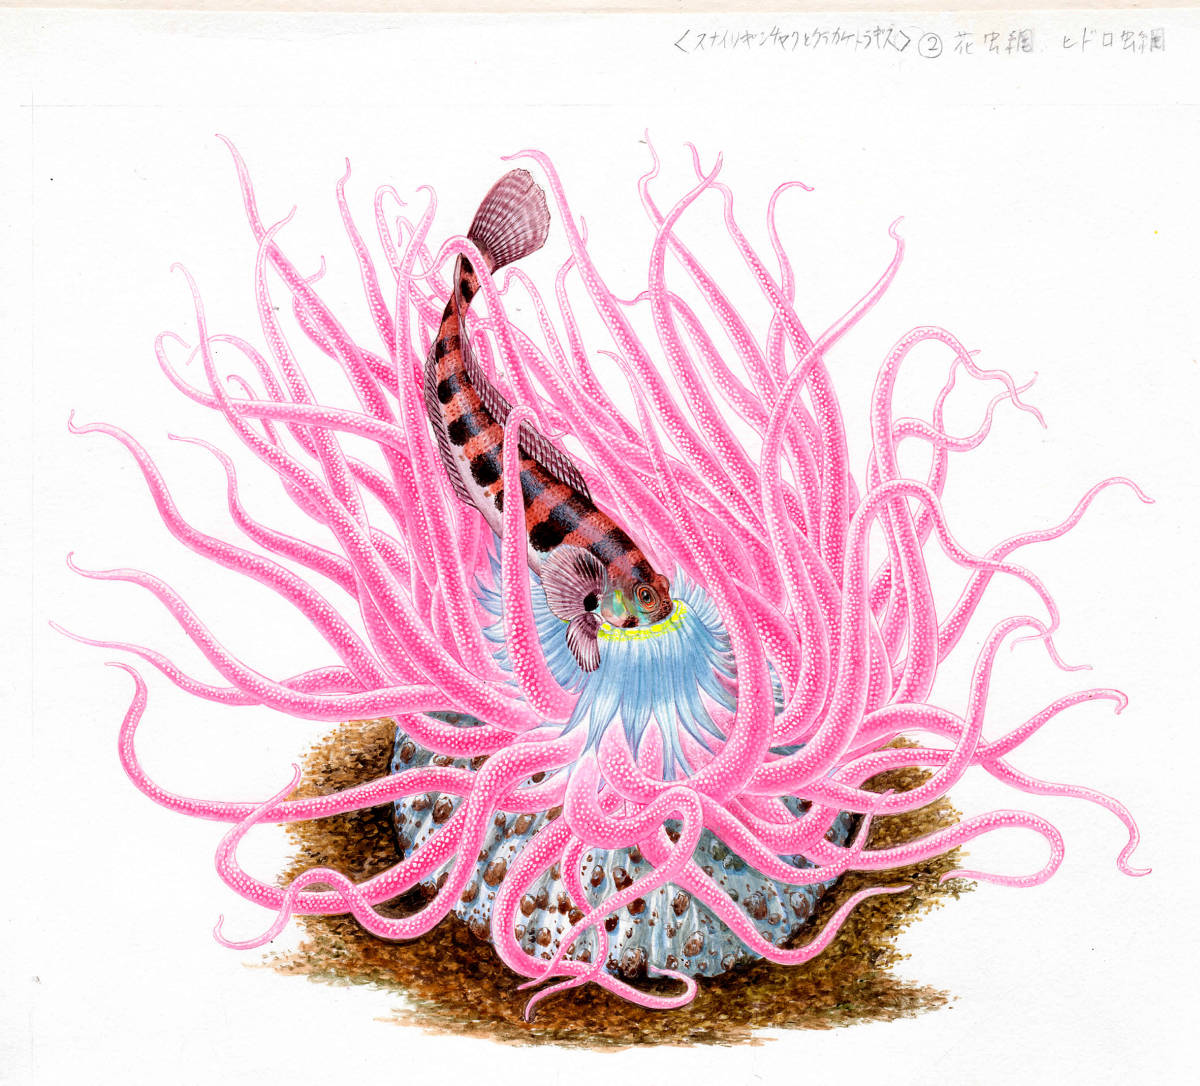 살아있는 생물 말미잘과 크라켈치드의 수채화 미니어처 그림 정품, 그림, 수채화, 동물 그림